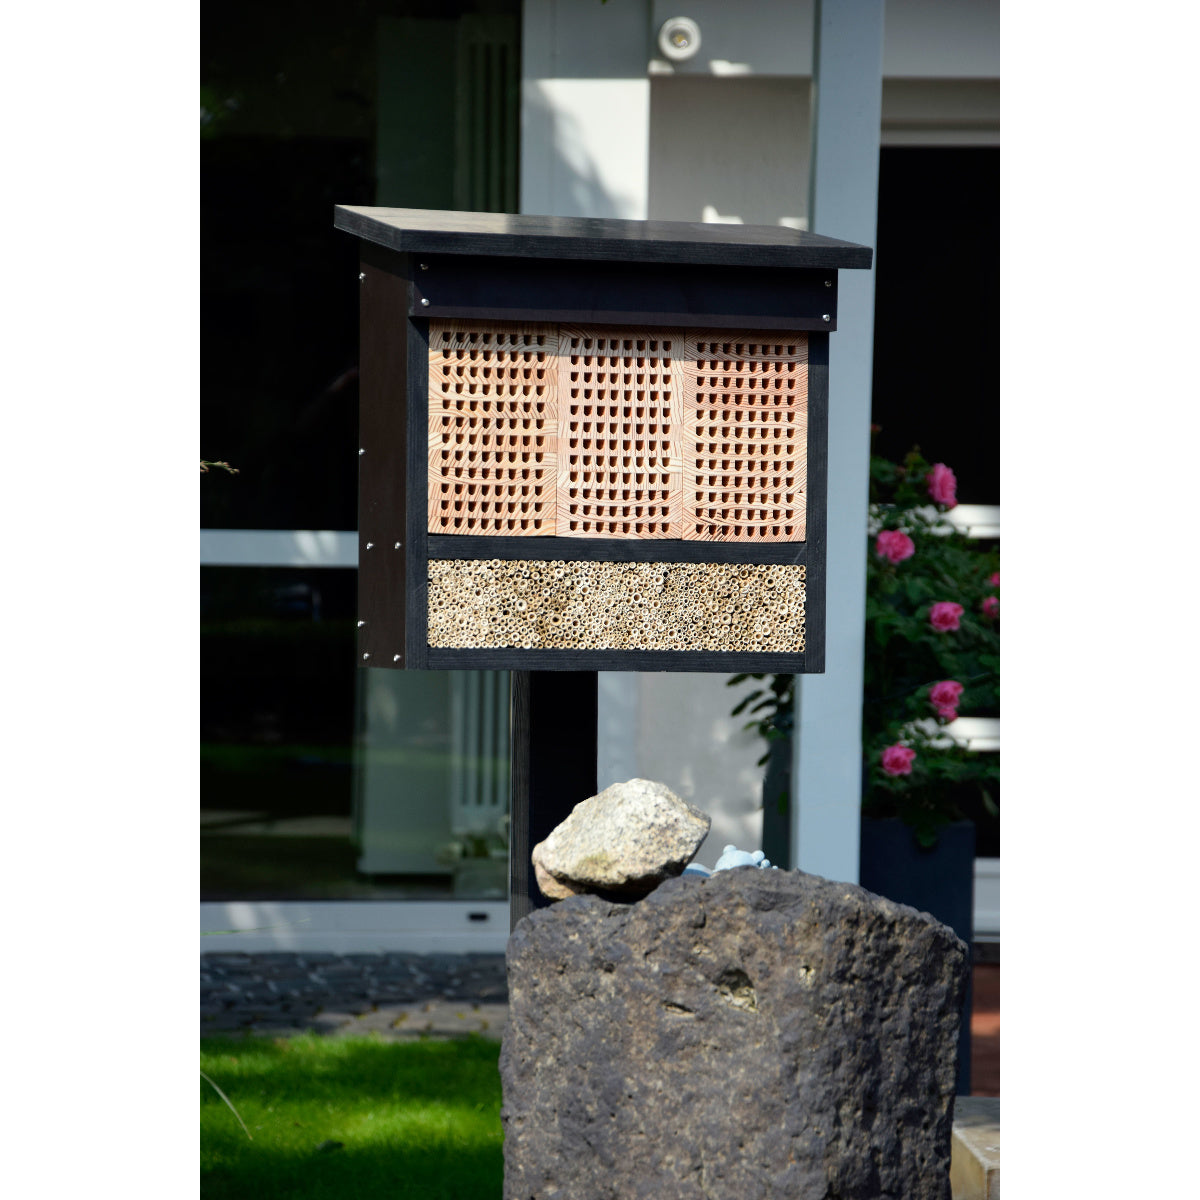 Art. 22700e Profi-Bienenhotel XL mit Pfahlständer und Lärche-Nistblöcken